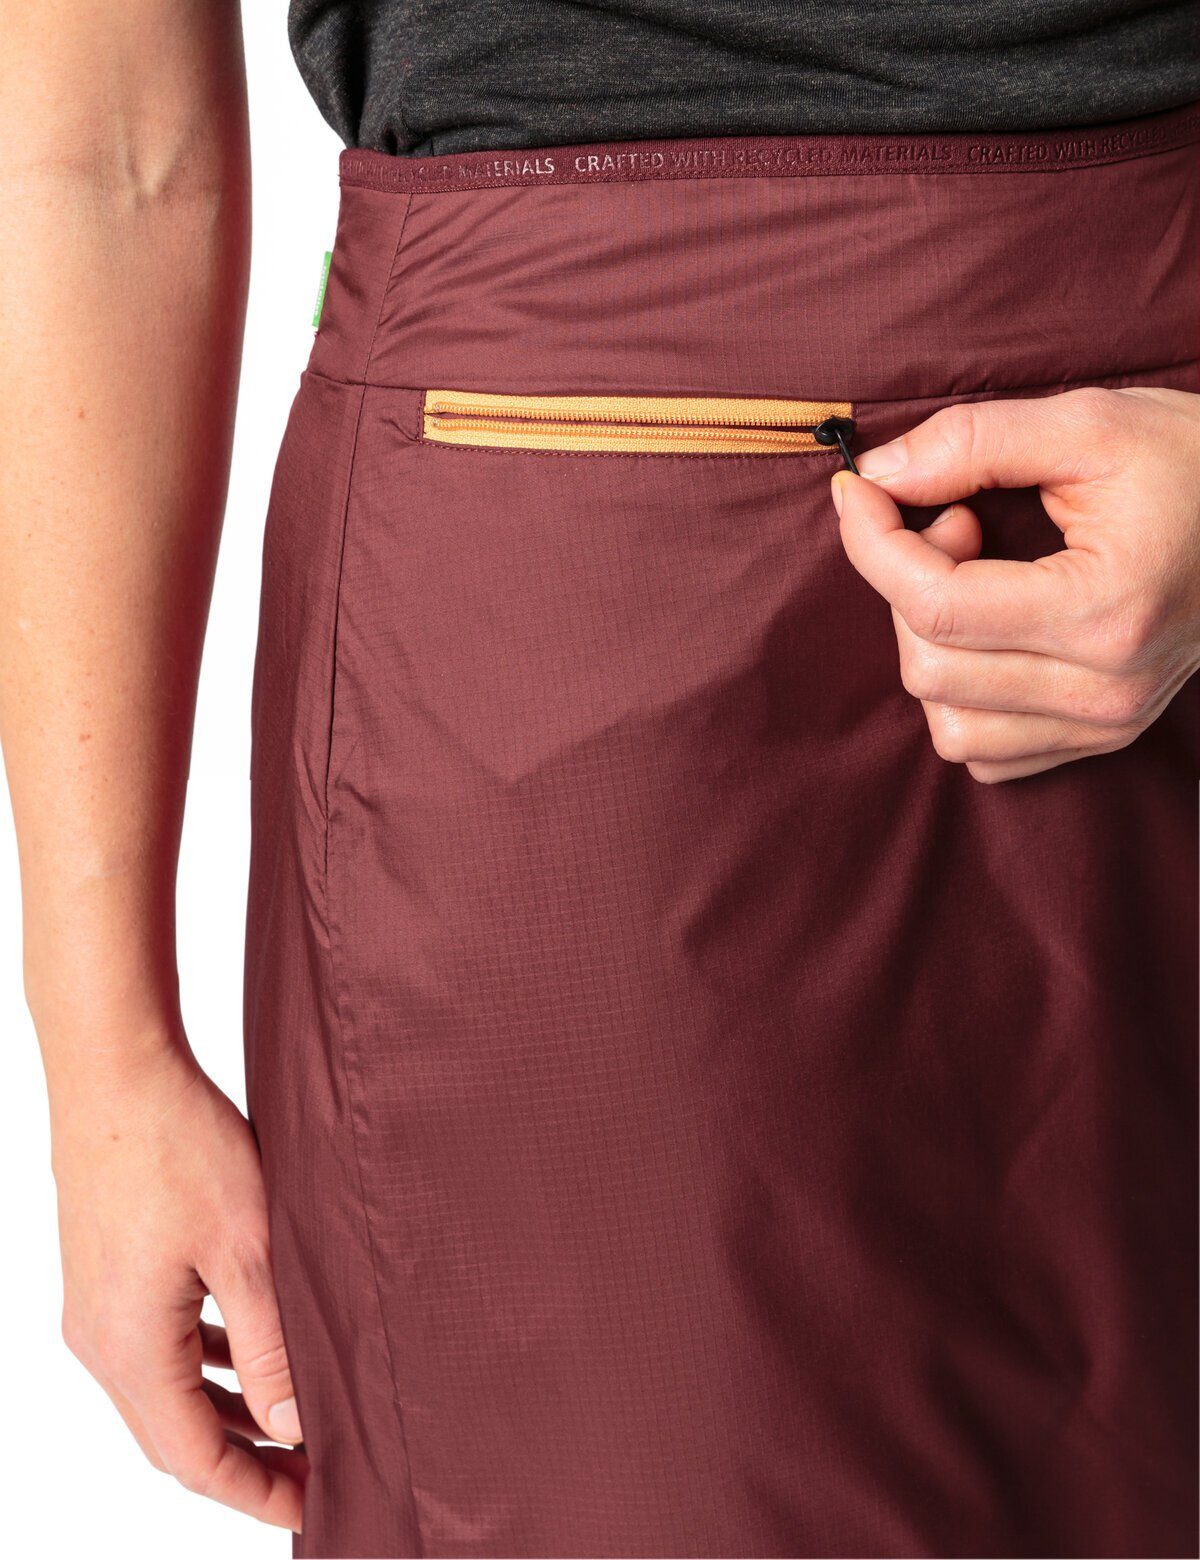 VAUDE Wickelrock Women's cherry Skirt in dark Neyland Padded Unifarbe